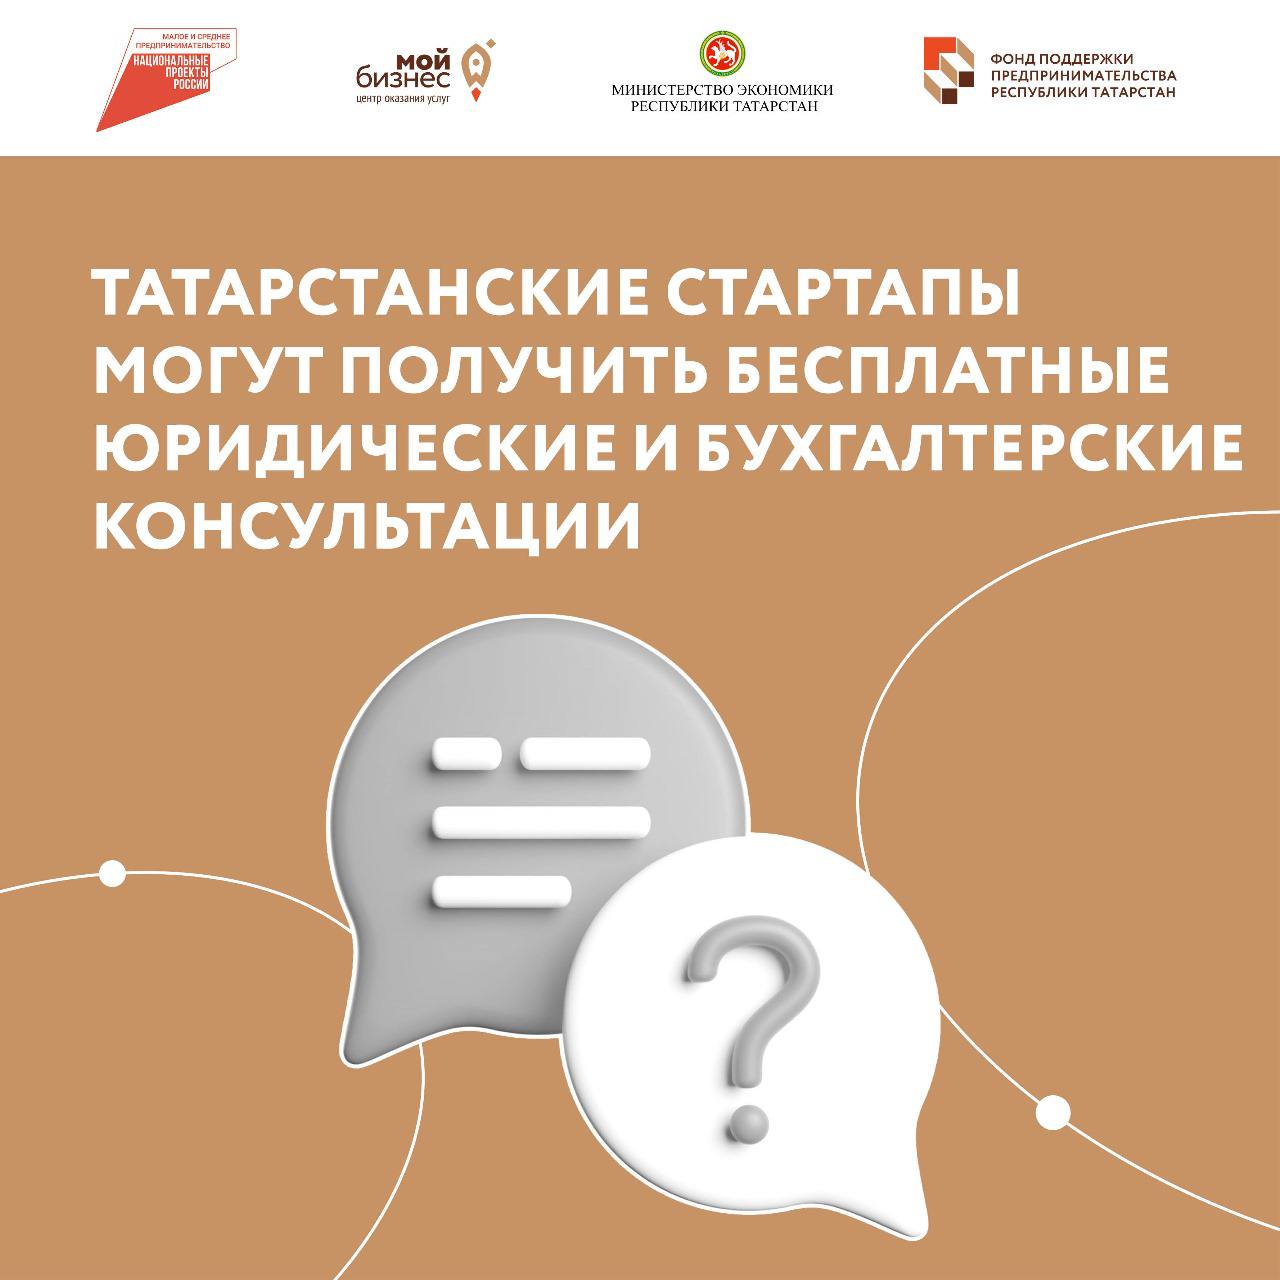 Татарстанские стартапы могут получить бесплатные юридические и бухгалтерские консультации.